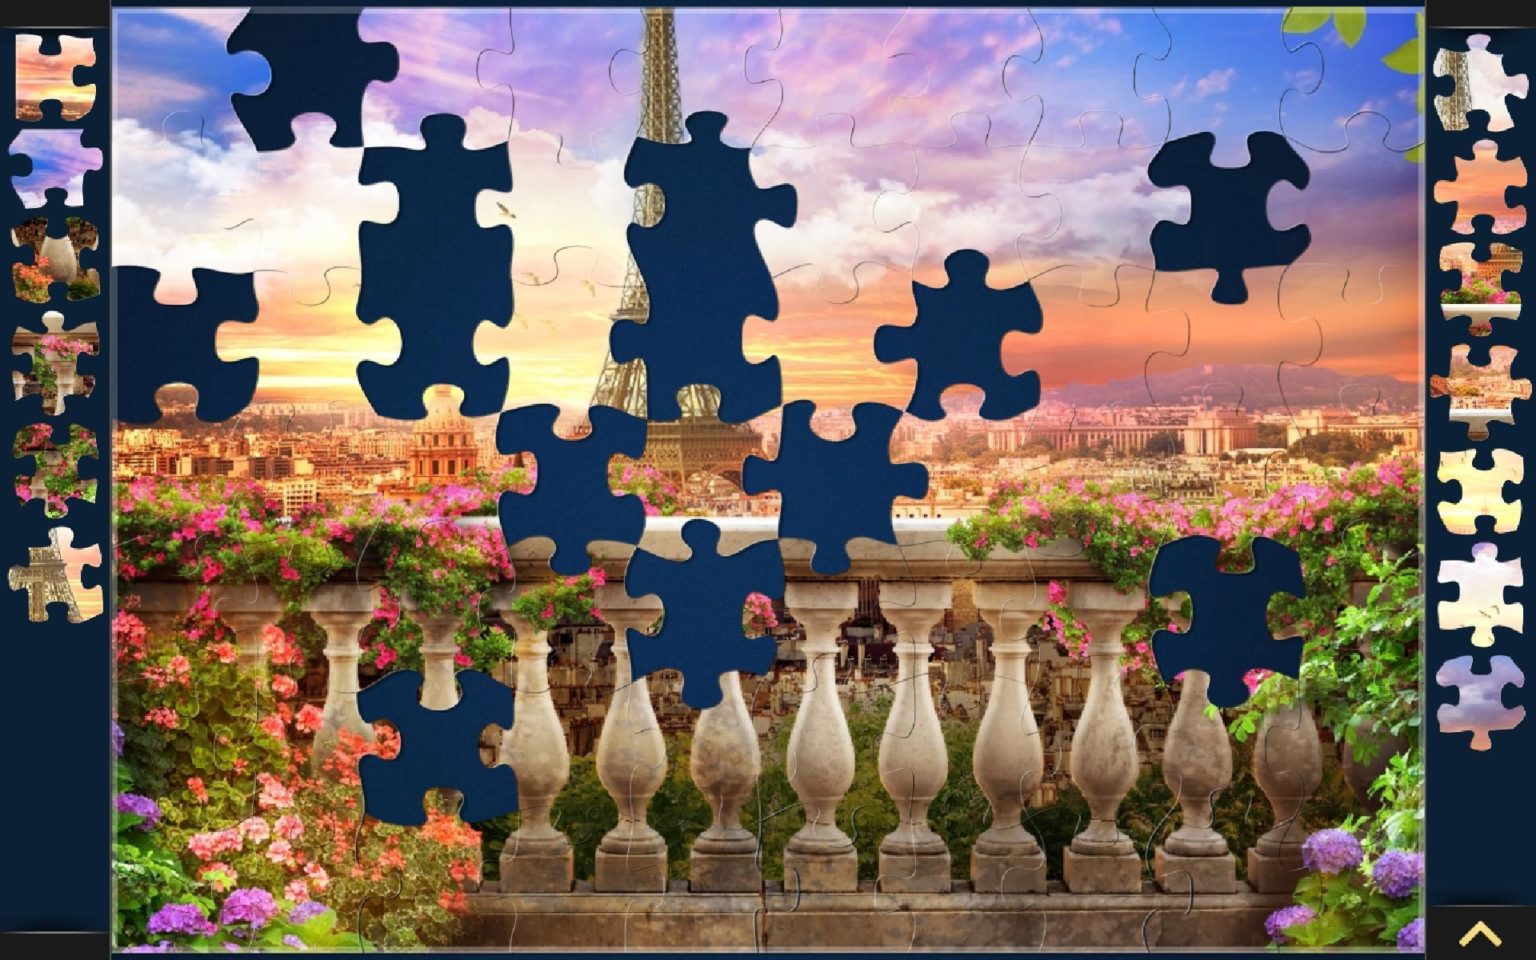 Magic Jigsaw Puzzles. находится в поисках менеджера по рекламной монетизаци...